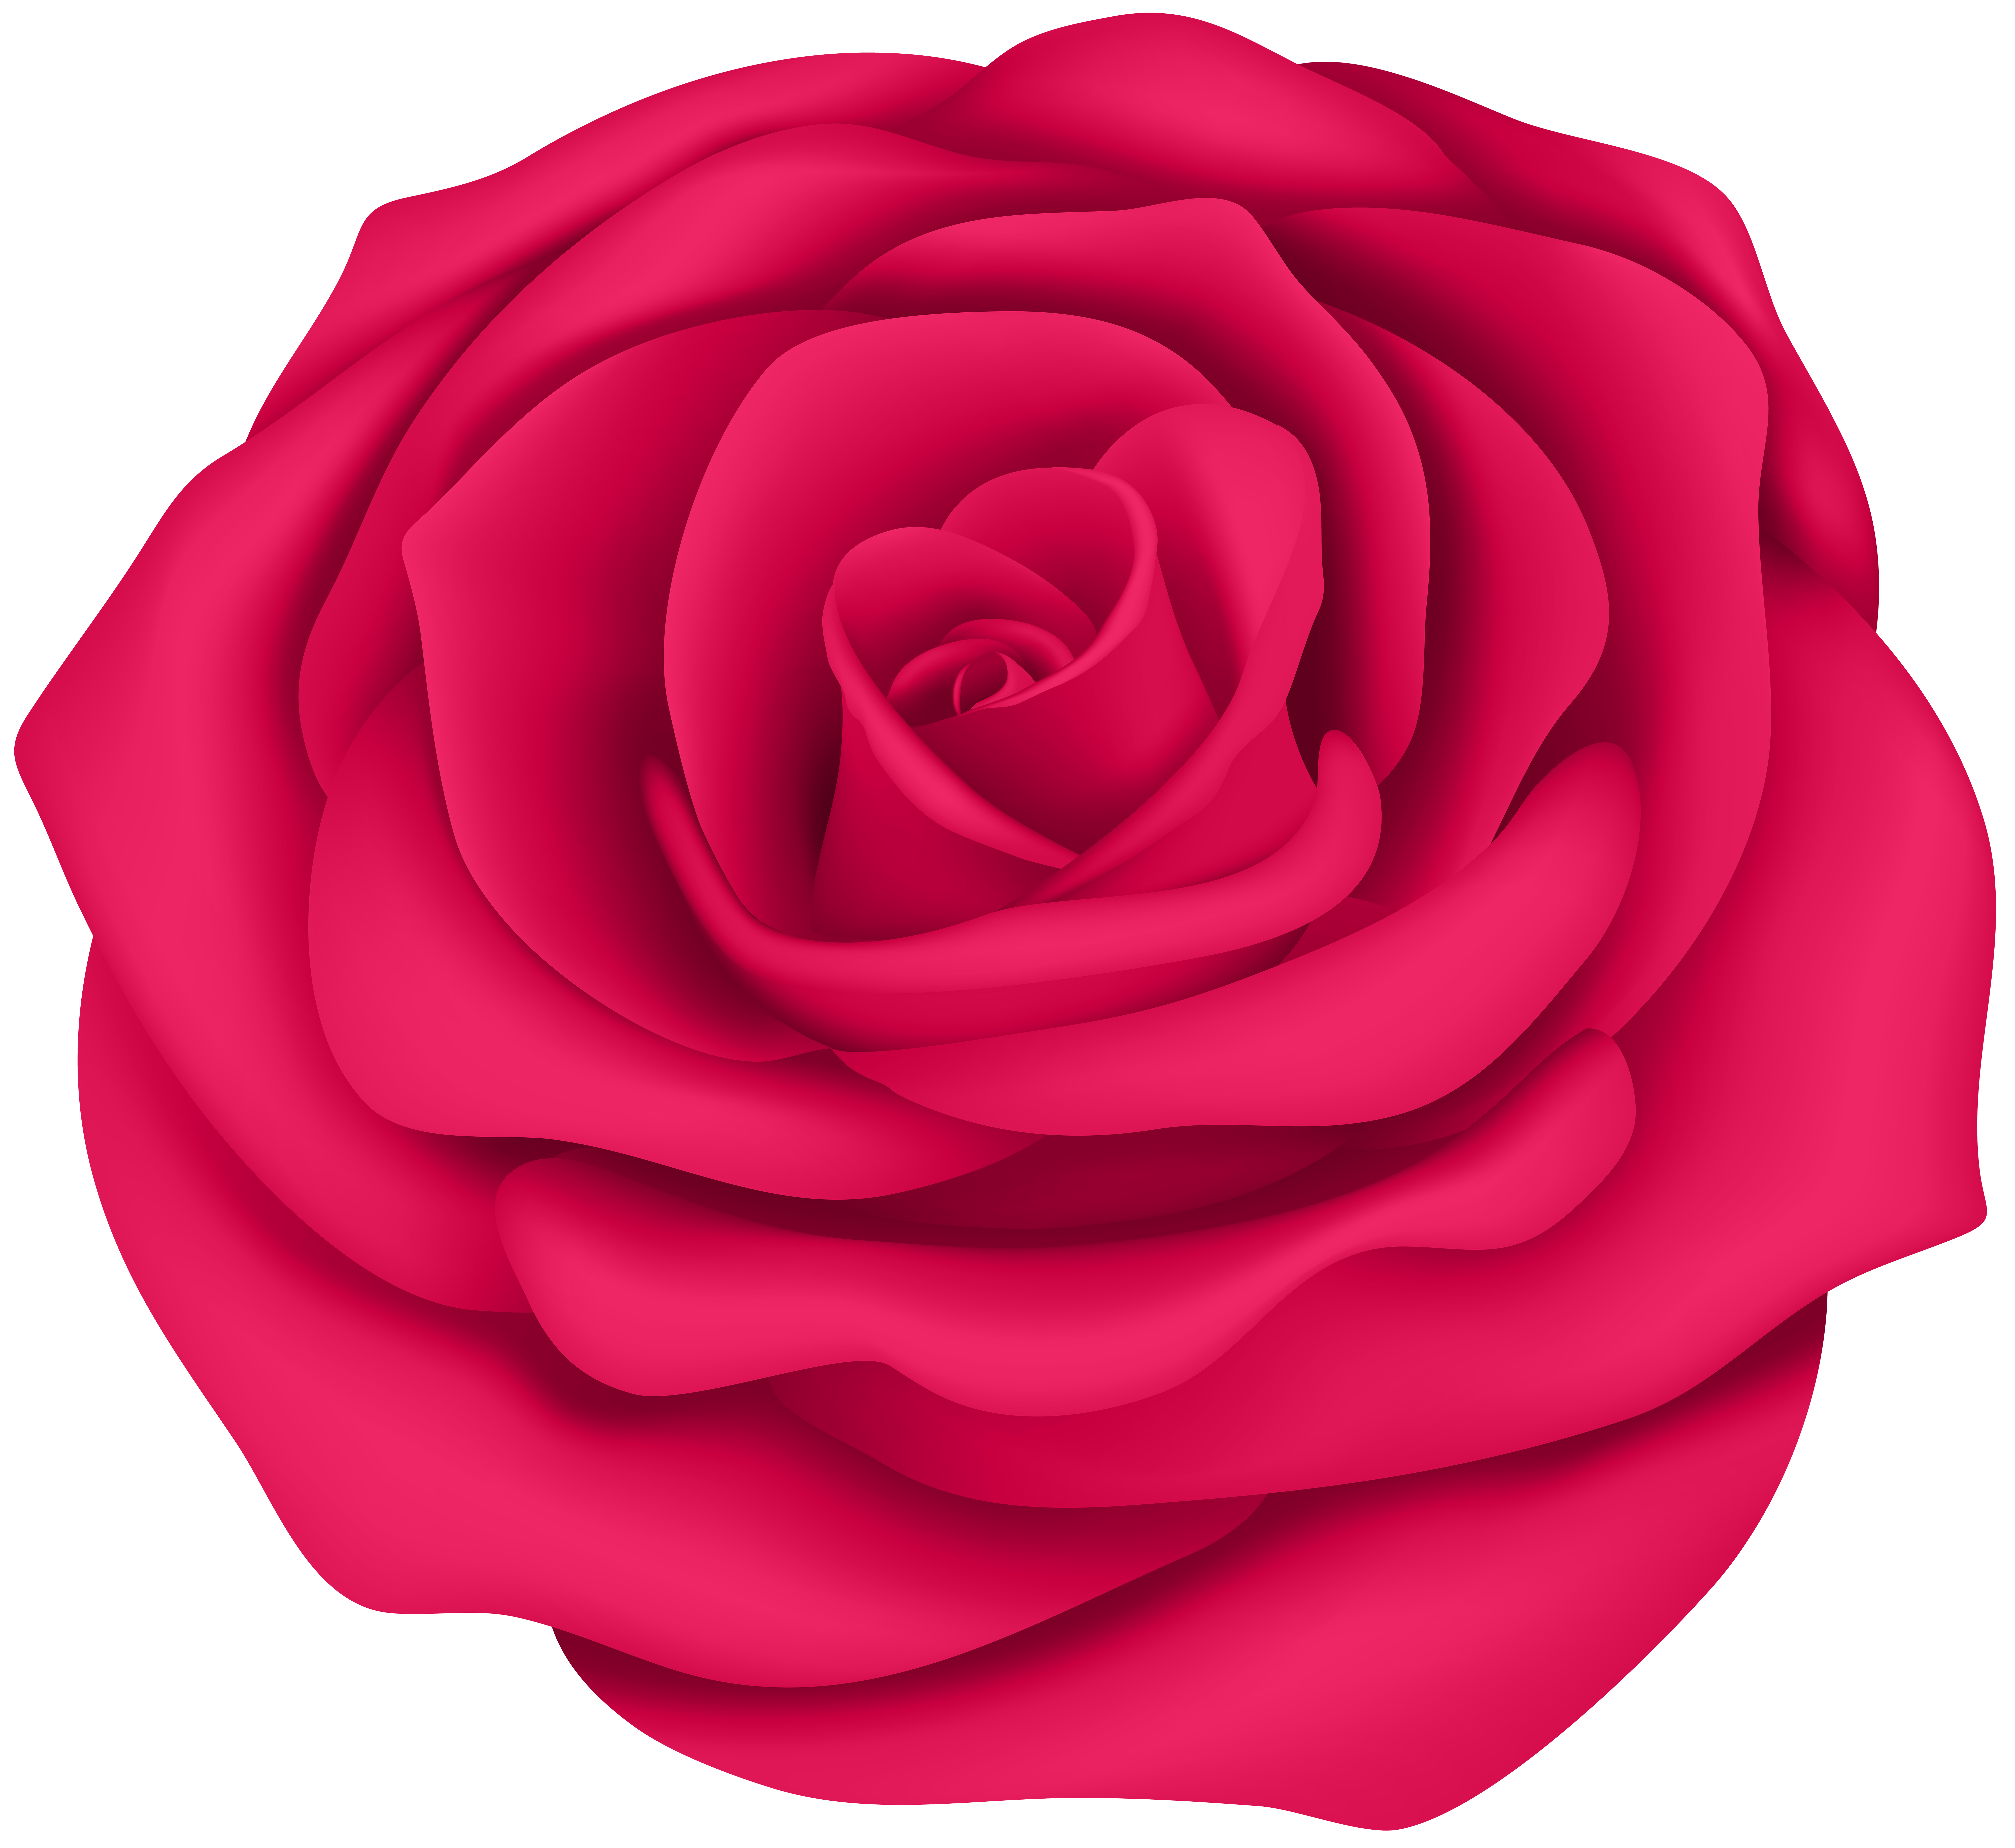 Pink Rose Flower Transparent Clip Art Image.